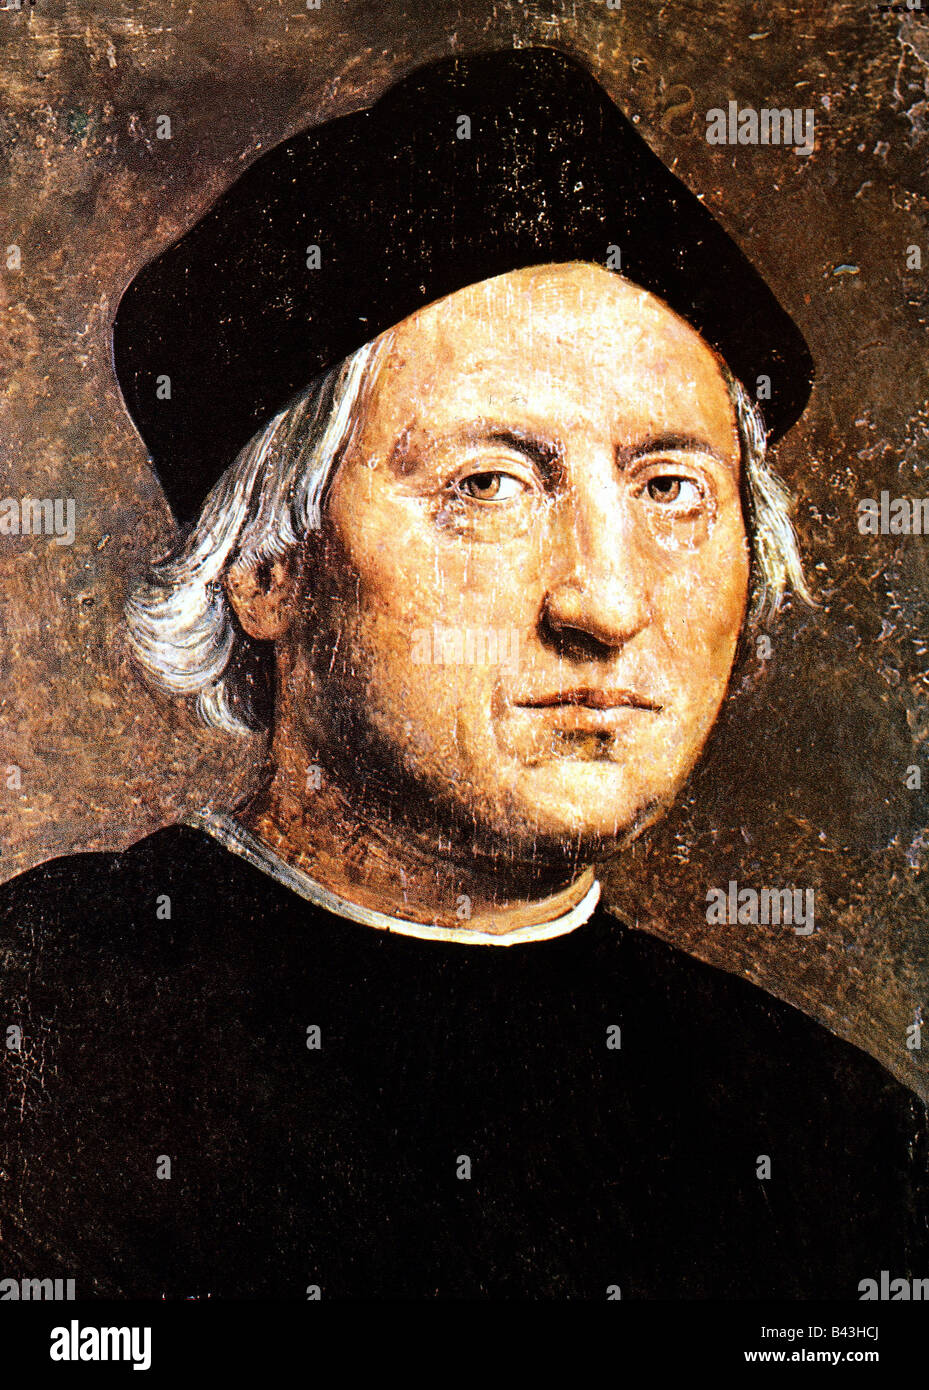 Columbus, Christopher, 1451 - 20.5.1506, Italian explorer, portrait, attributed to Ridolfo Ghirlandaio, National Museum Genoa, Italy, Stock Photo